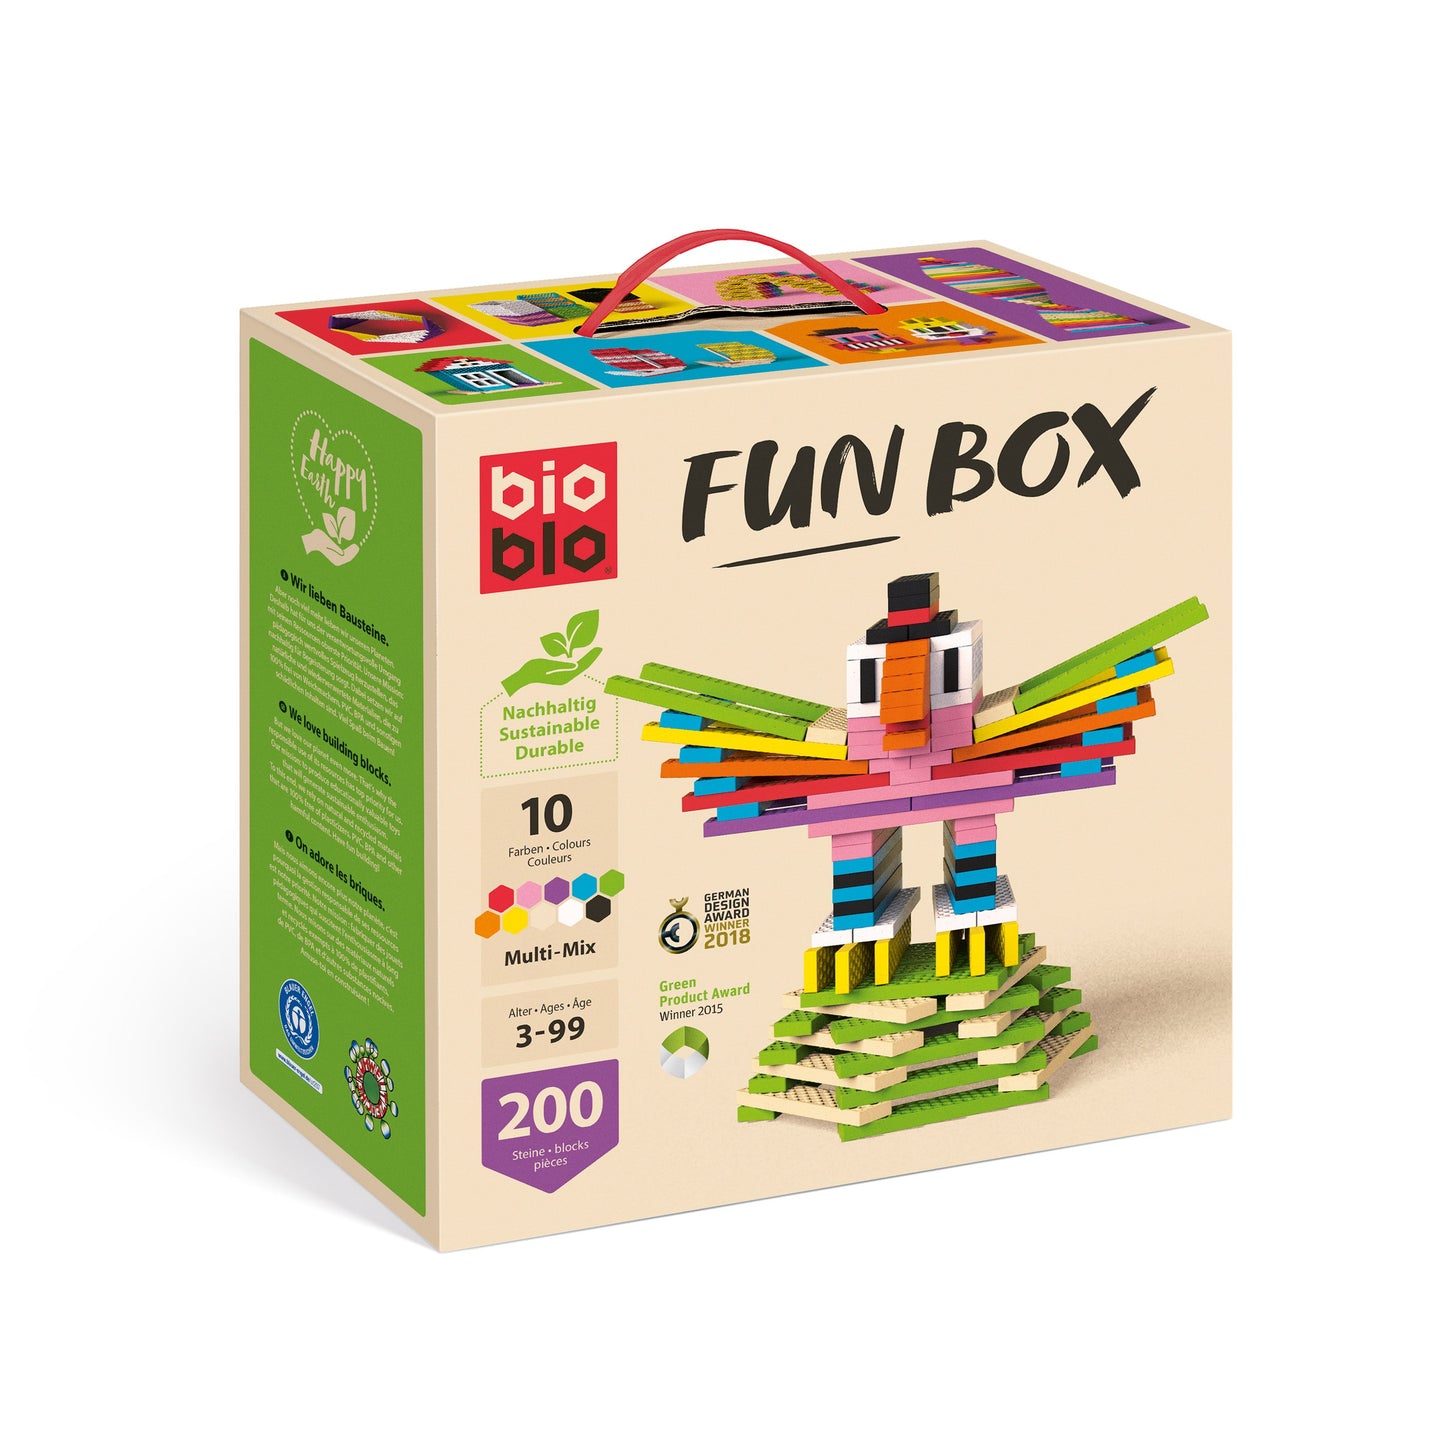 Bioblo - Fun Box "Multi-Mix" with 200 blocks